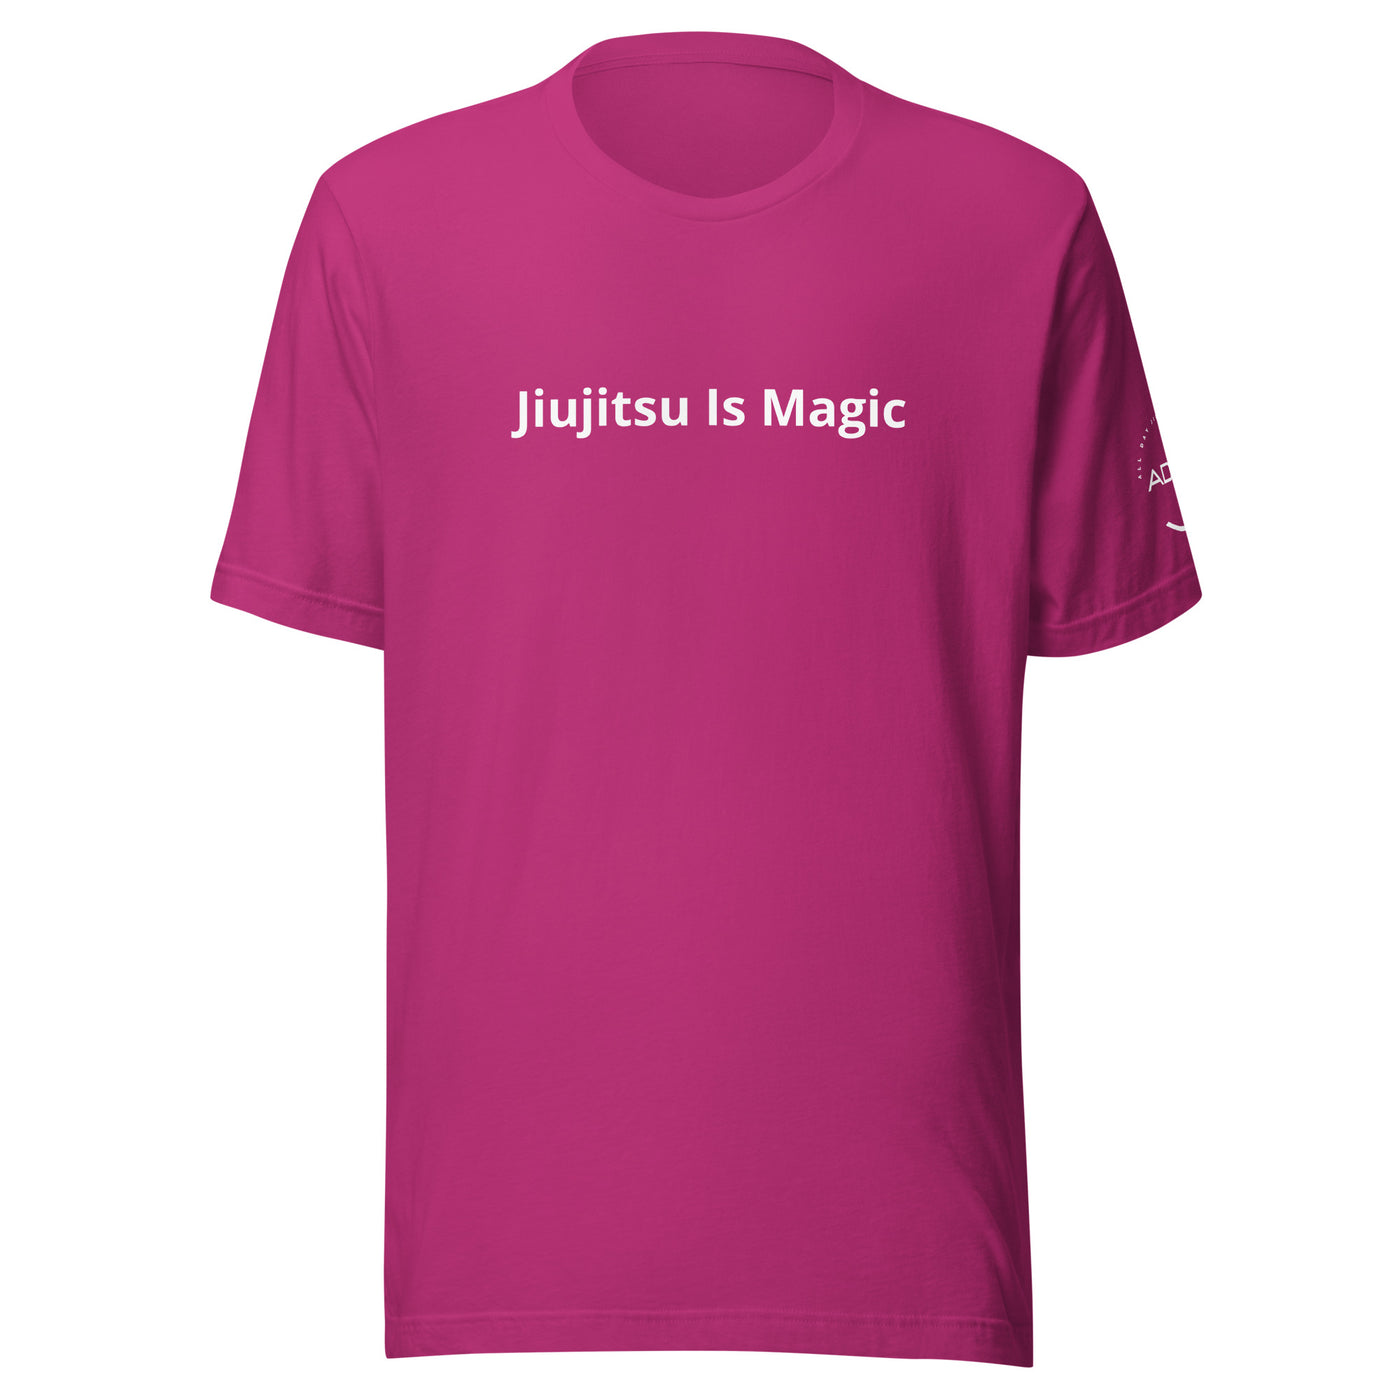 Jiujitsu is Magic T-shirt